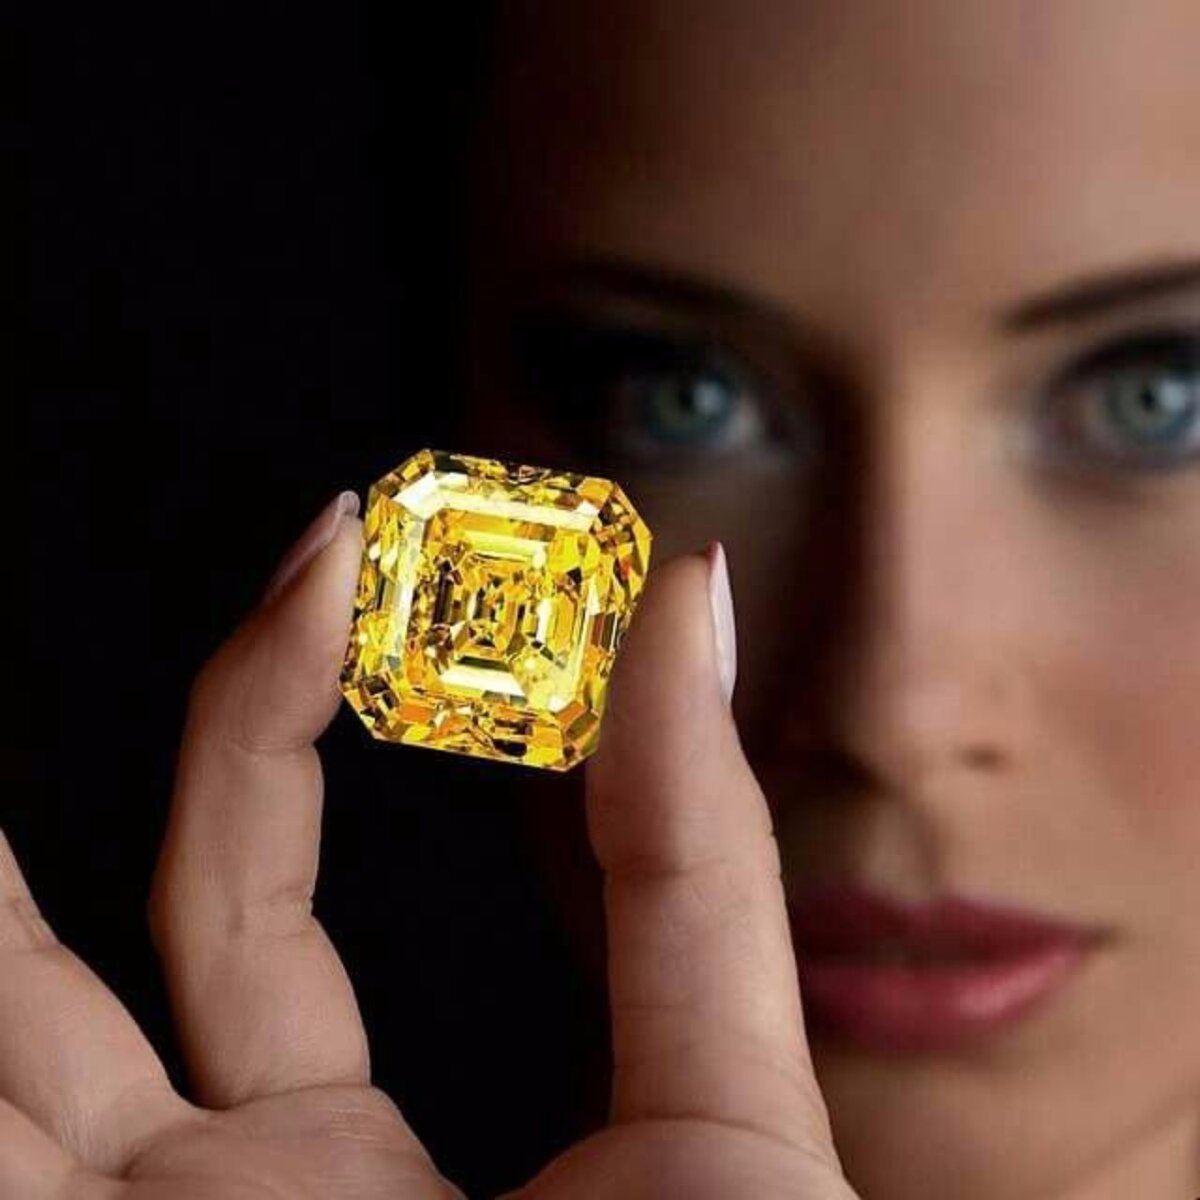 Инвестирование в драгоценности first class diamonds. Кольцо Графф с желтым бриллиантом. Кольцо с желтым бриллиантом Graff. Graff ювелирные украшения с желтым бриллиантом.